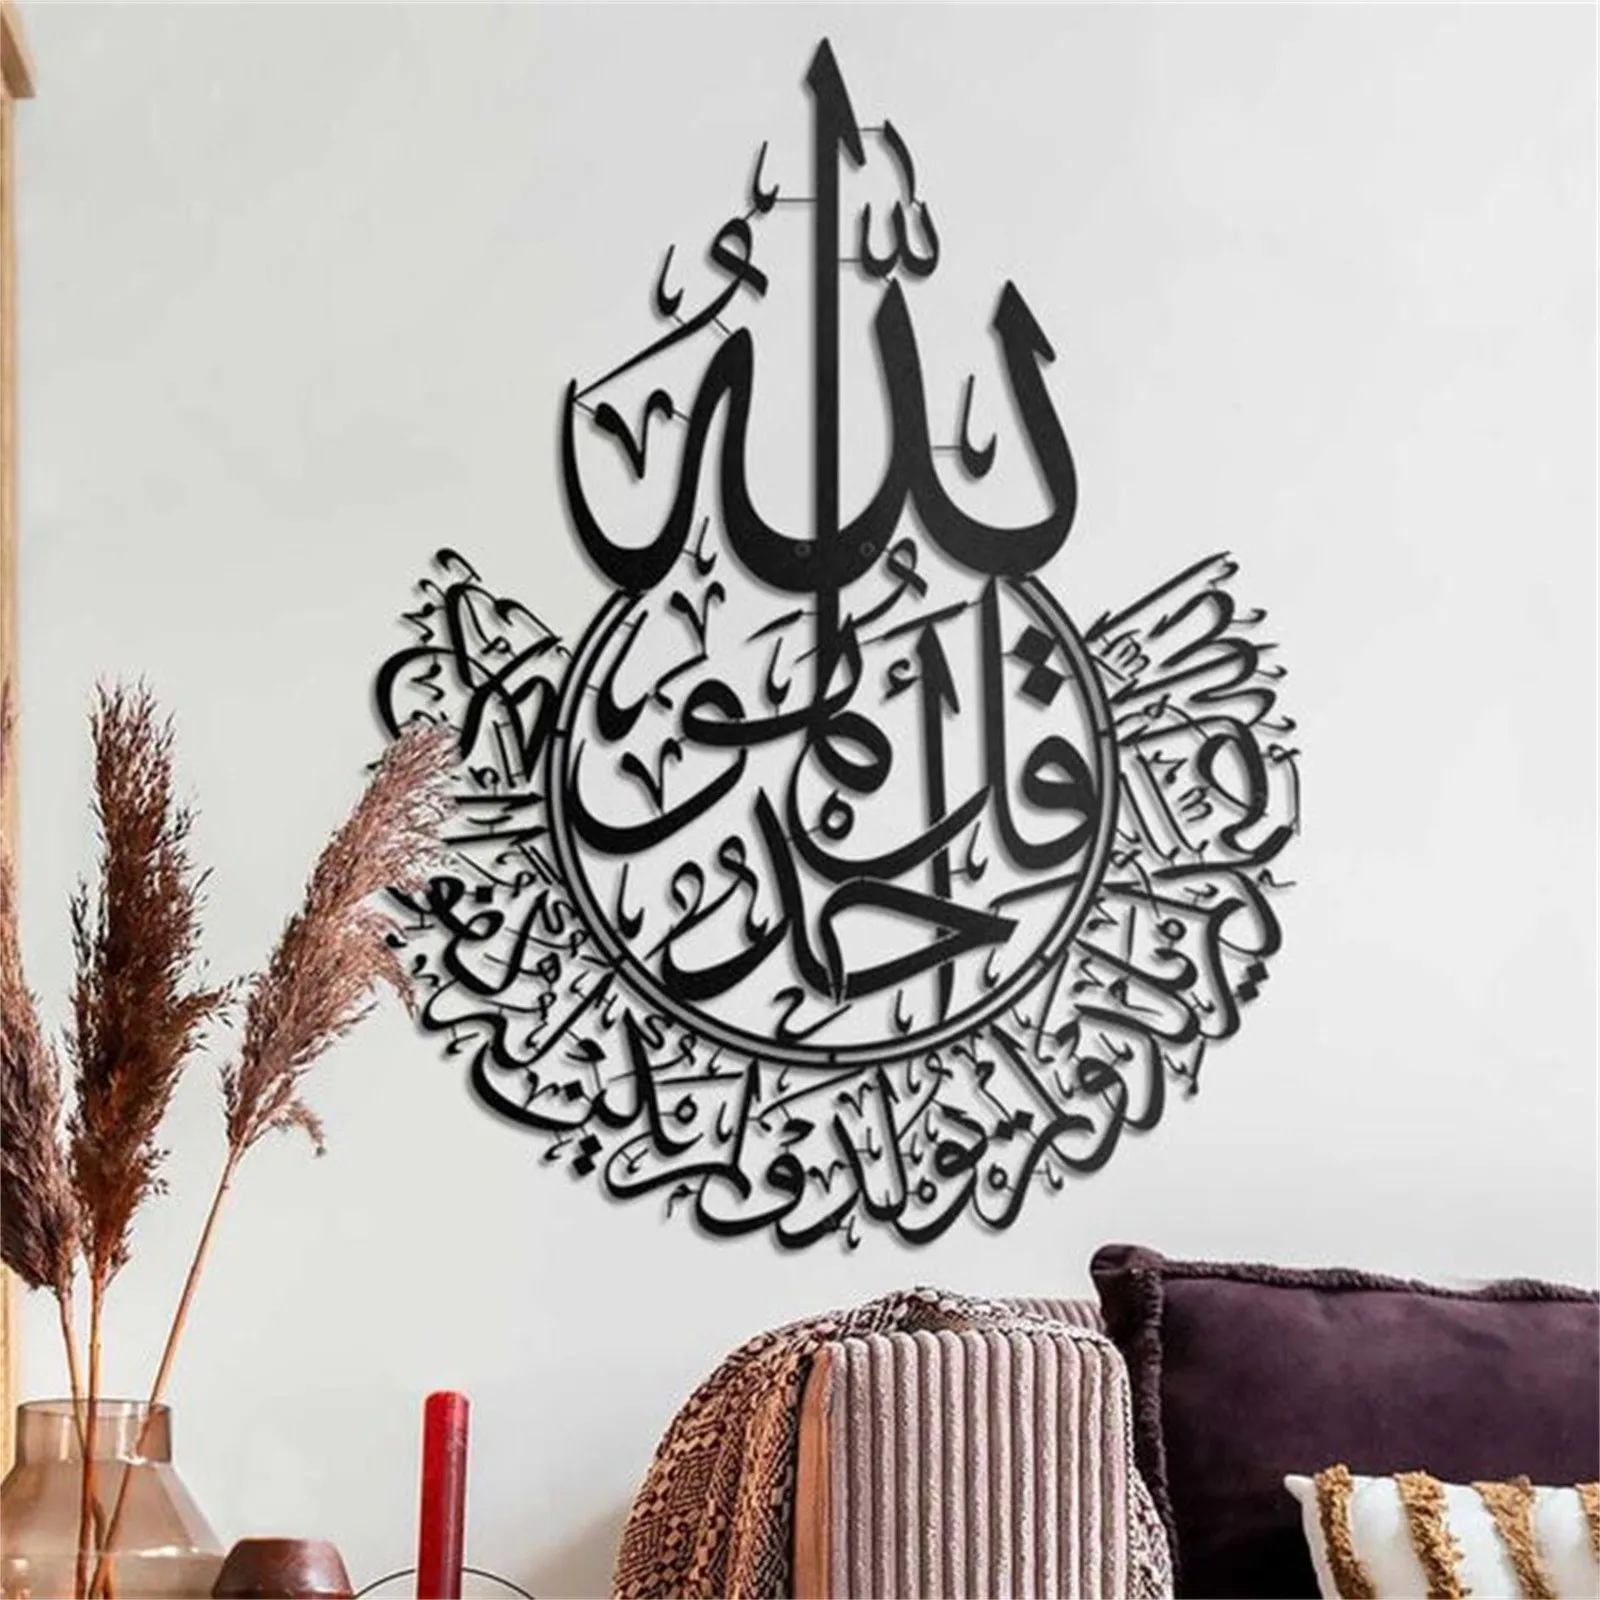 Ayatul Исламская настенная художественная рамка арабская каллиграфия подарок для